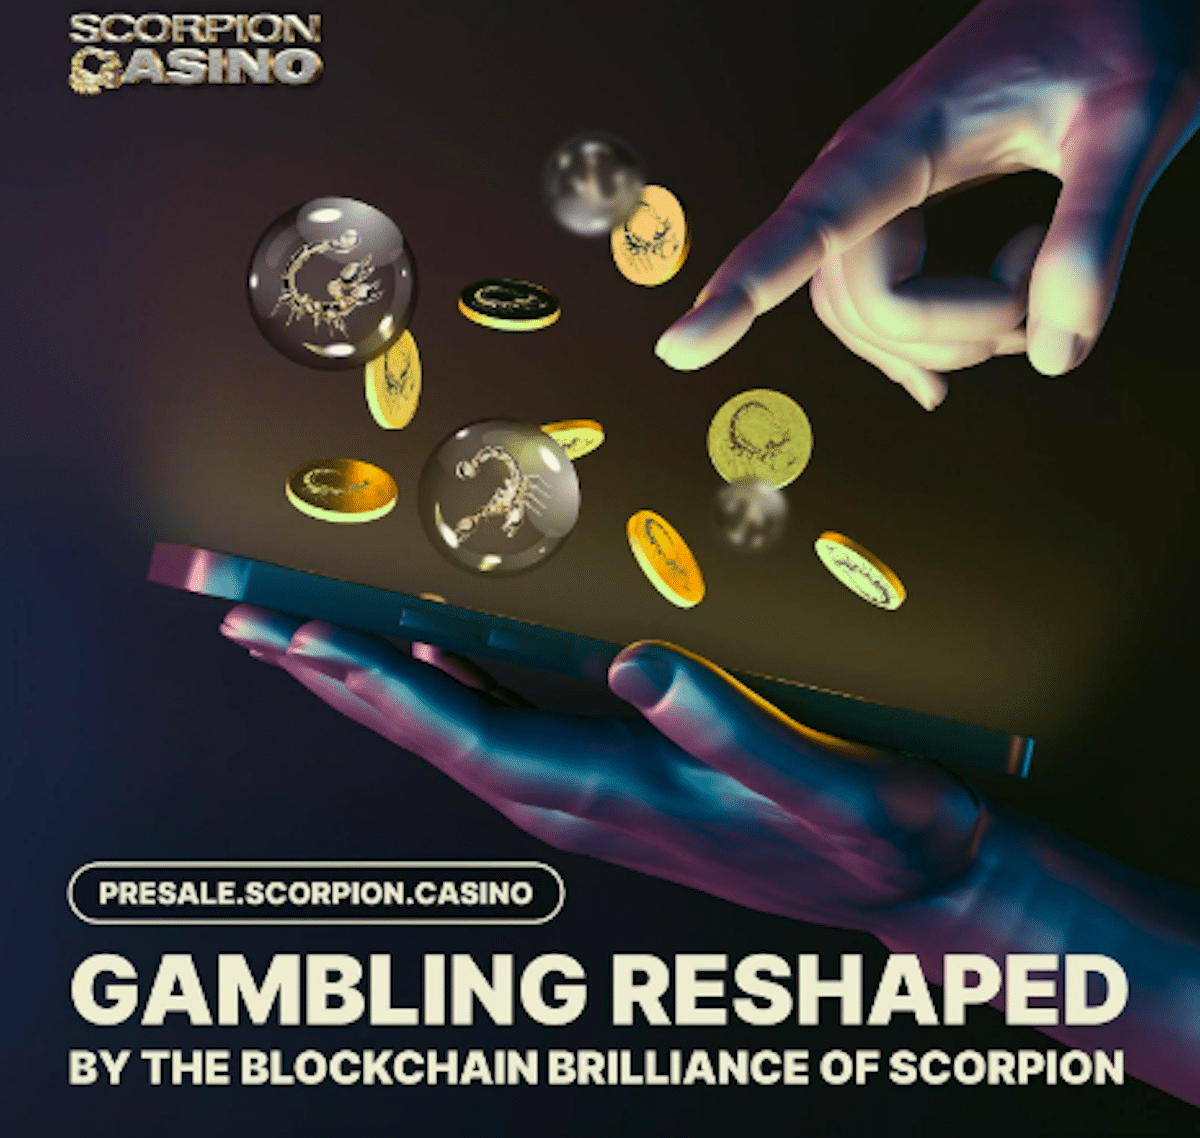 Scorpion Casino chega a US$ 3,5 milhões em pré-venda, à medida em que investidores vislumbram potencial de lucro